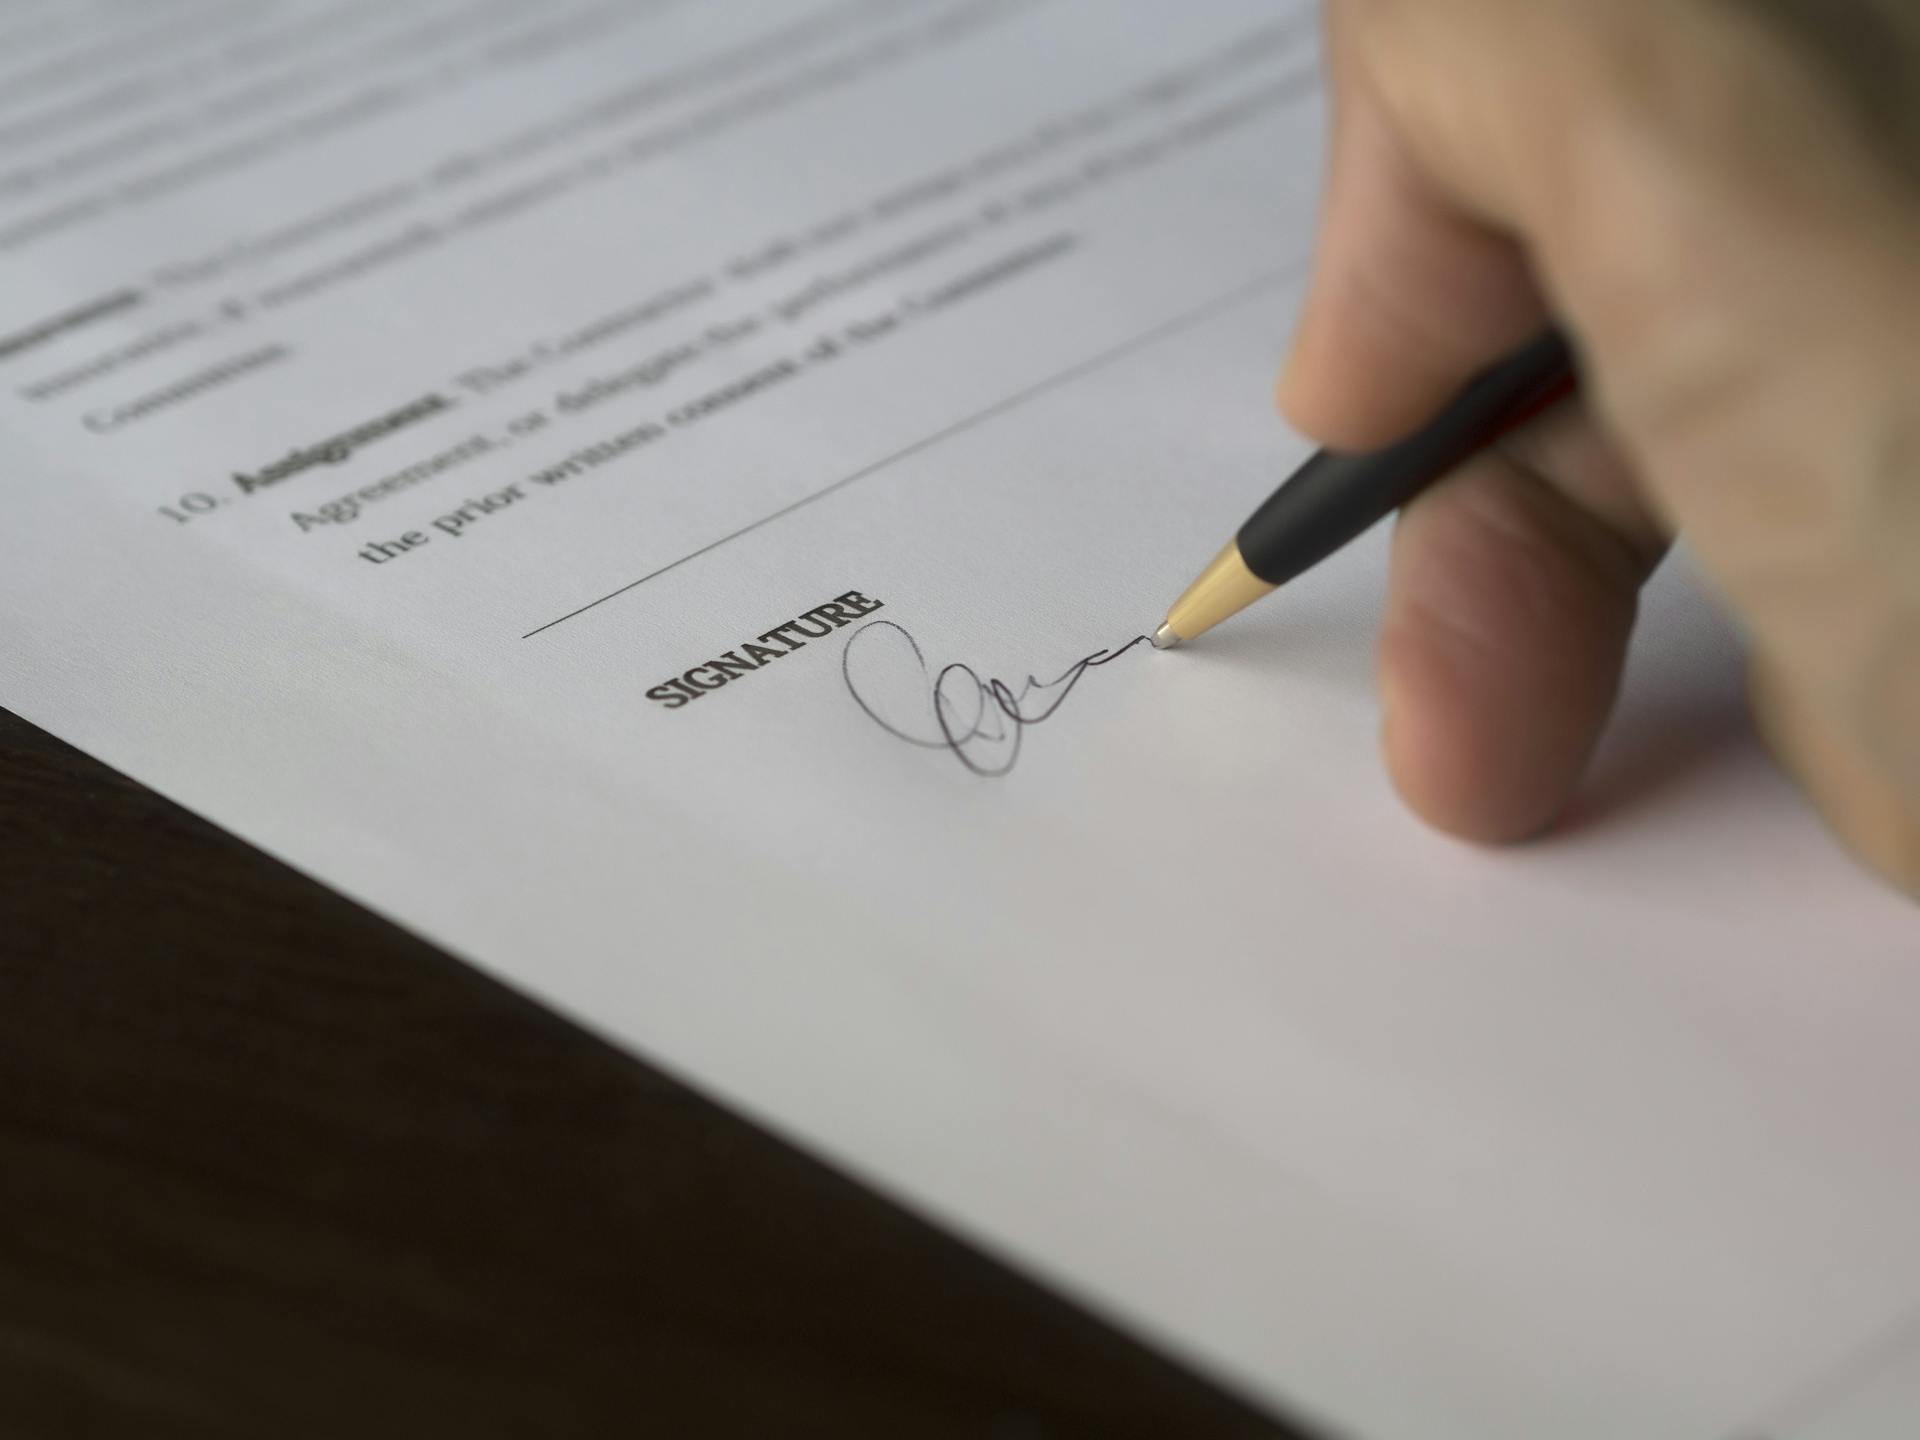 Une personne signant un document | Source : Pexels